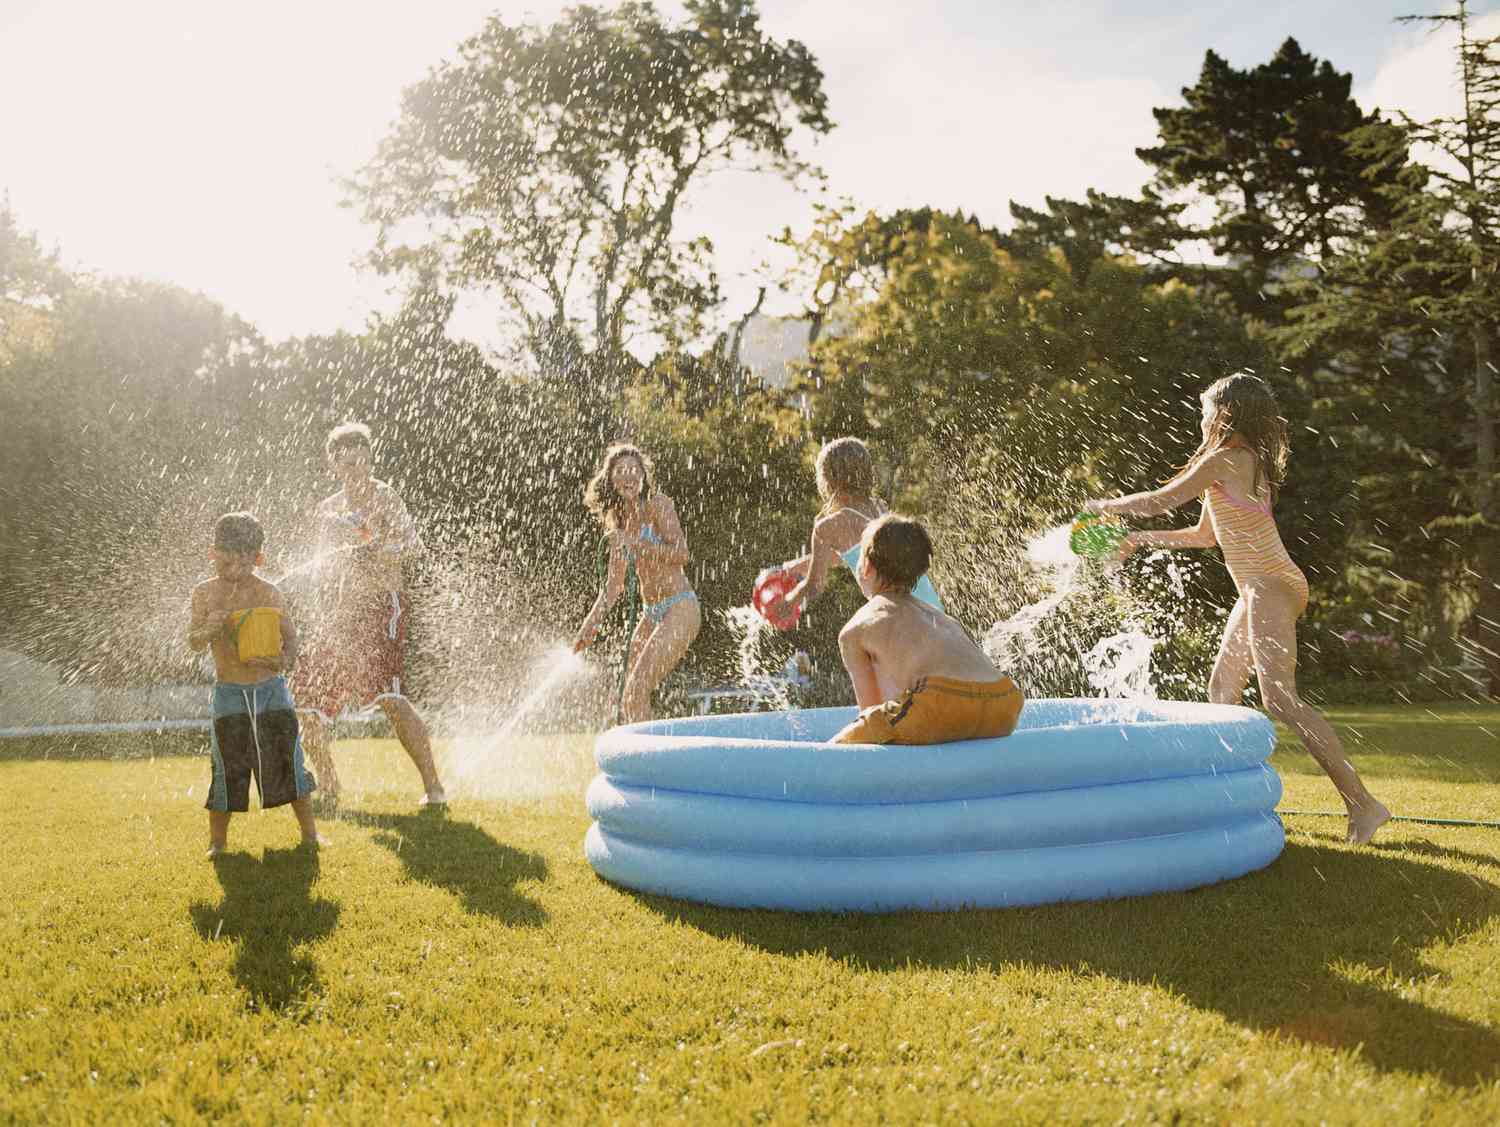 Uma piscina infantil azul na grama com crianças fazendo uma guerra de água.